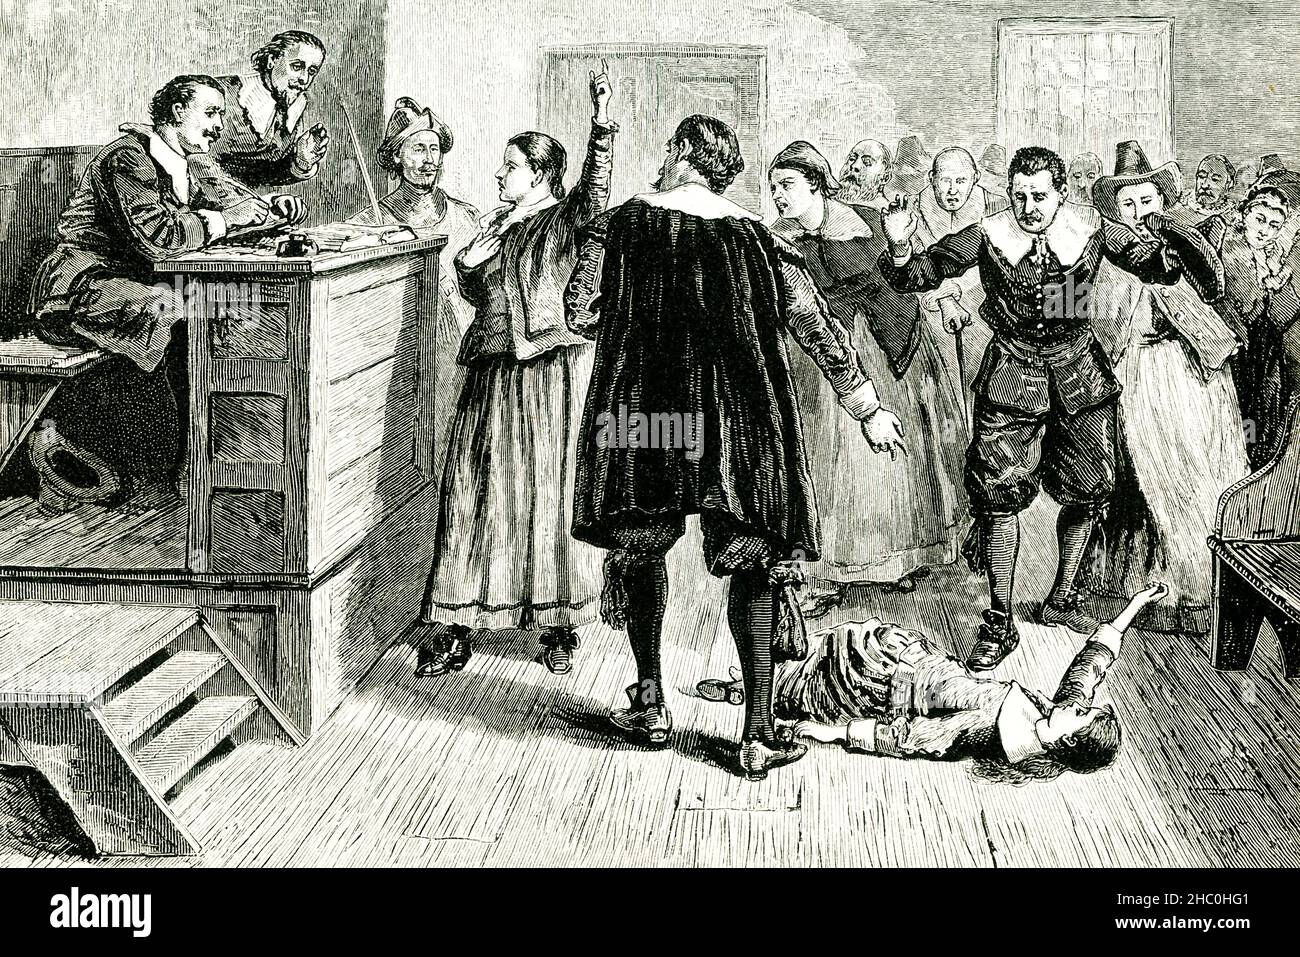 Les tristement célèbres procès de sorcières de Salem ont commencé au printemps 1692, après qu'un groupe de jeunes filles du village de Salem, Massachusetts, a prétendu être possédé par le diable et a accusé plusieurs femmes locales de sorcellerie.Alors qu'une vague d'hystérie s'est répandue dans tout le Massachusetts colonial, un tribunal spécial s'est réuni à Salem pour entendre les affaires; la première personne condamnée, Bridget Bishop, a été pendue en juin.Dix-huit autres ont suivi Bishop à la colline de Galws de Salem, tandis que quelque 150 autres hommes, femmes et enfants ont été accusés au cours des prochains mois Banque D'Images